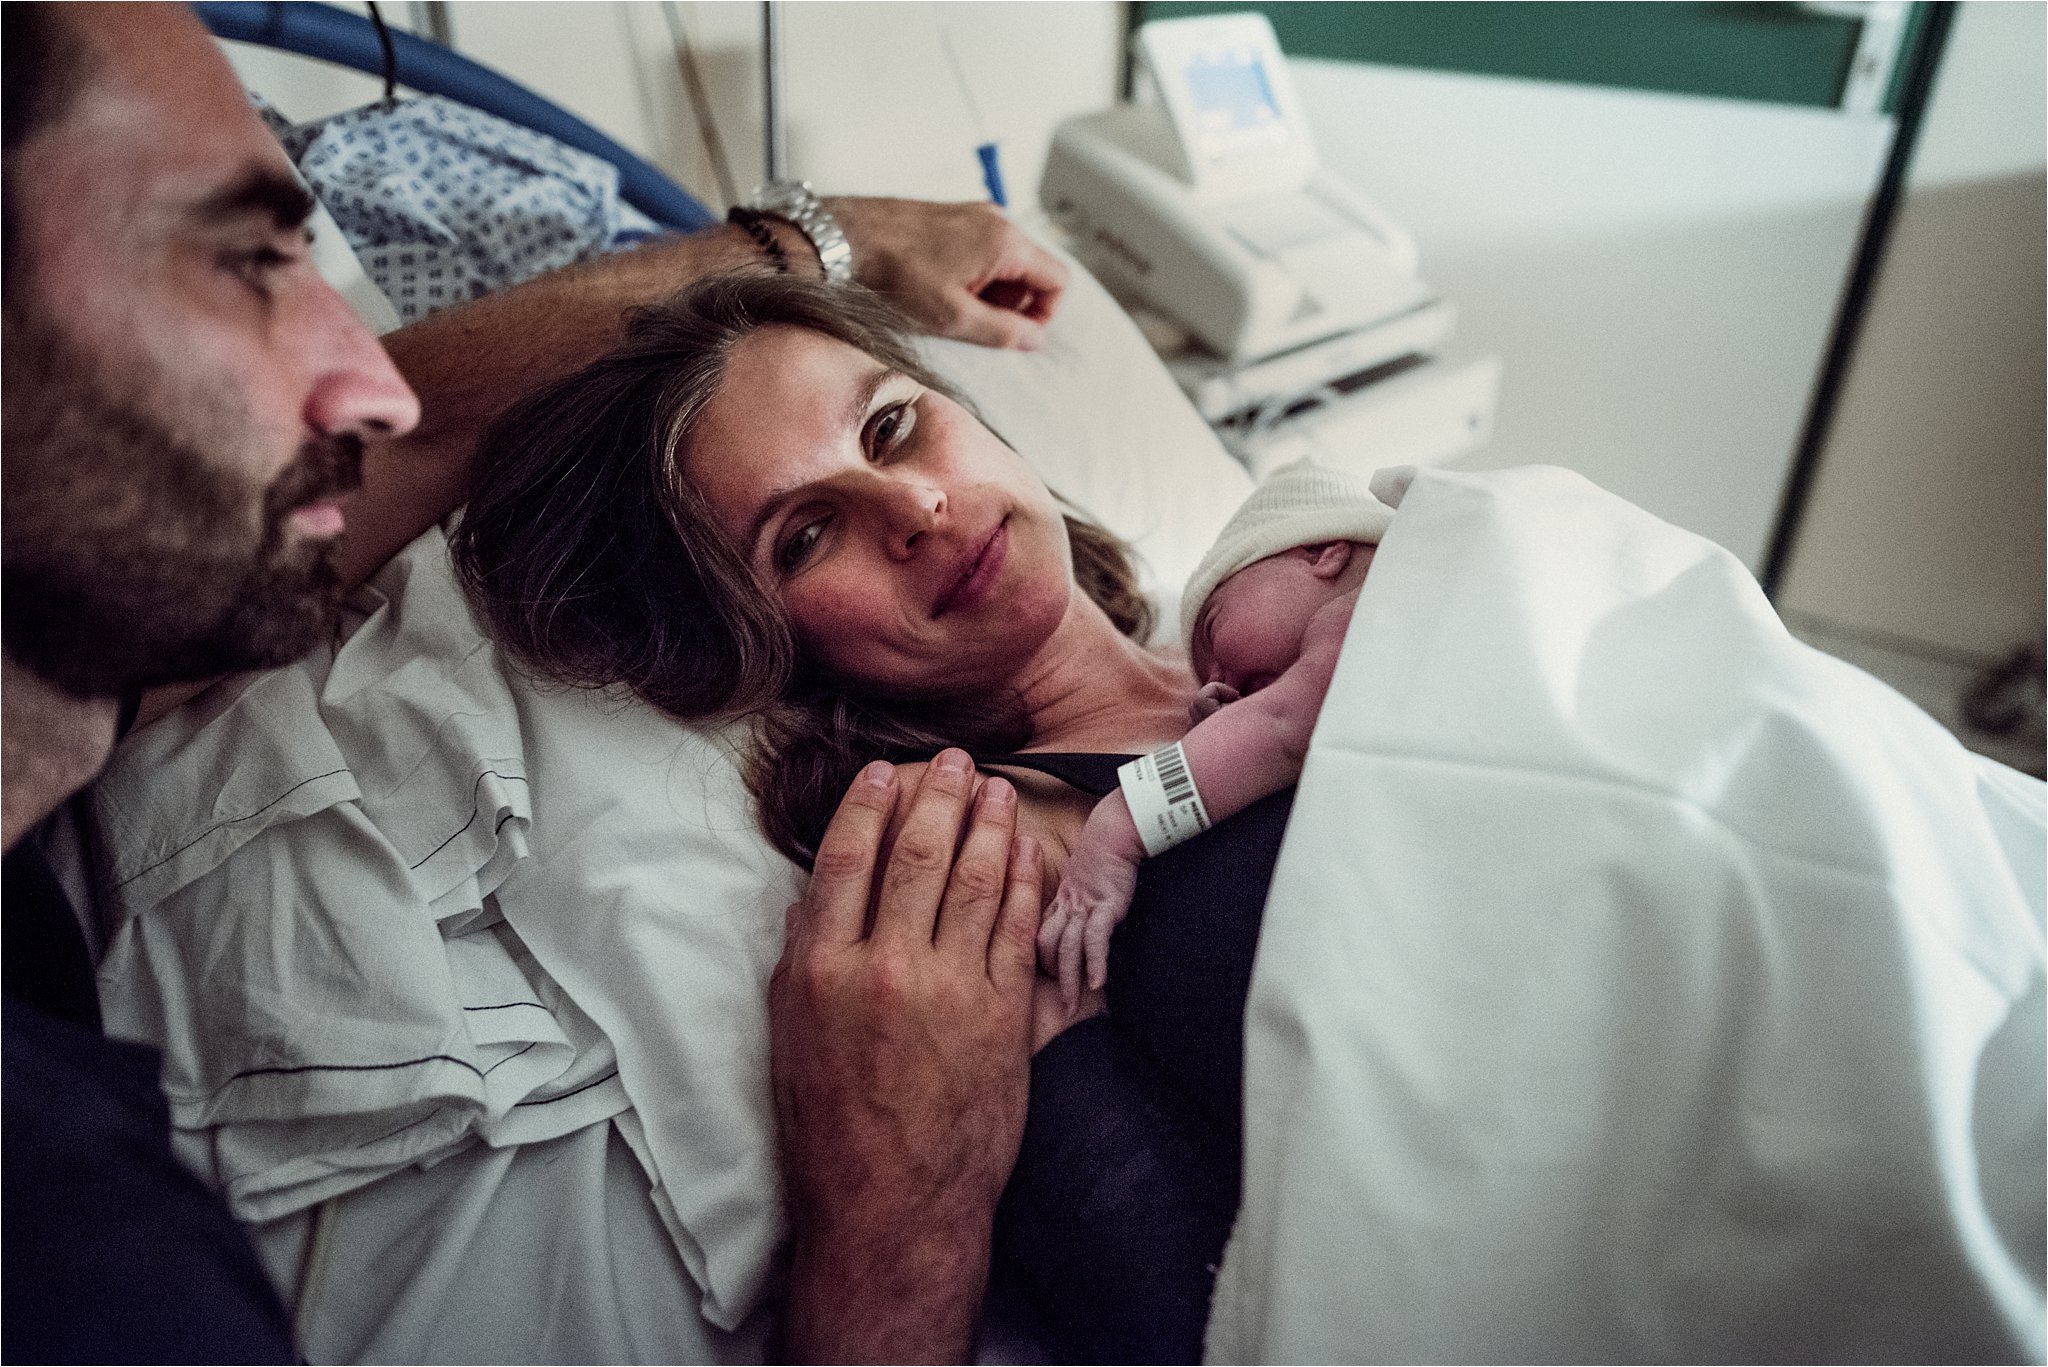 J + G + L accouchement REPORTAGE PHOTO bébé bebe naissance accouchement |  PHOTOGRAPHE naissance accouchement PARIS  | FREYIA photography | photographe | maternité accouchement à domicile dans  (Copy)